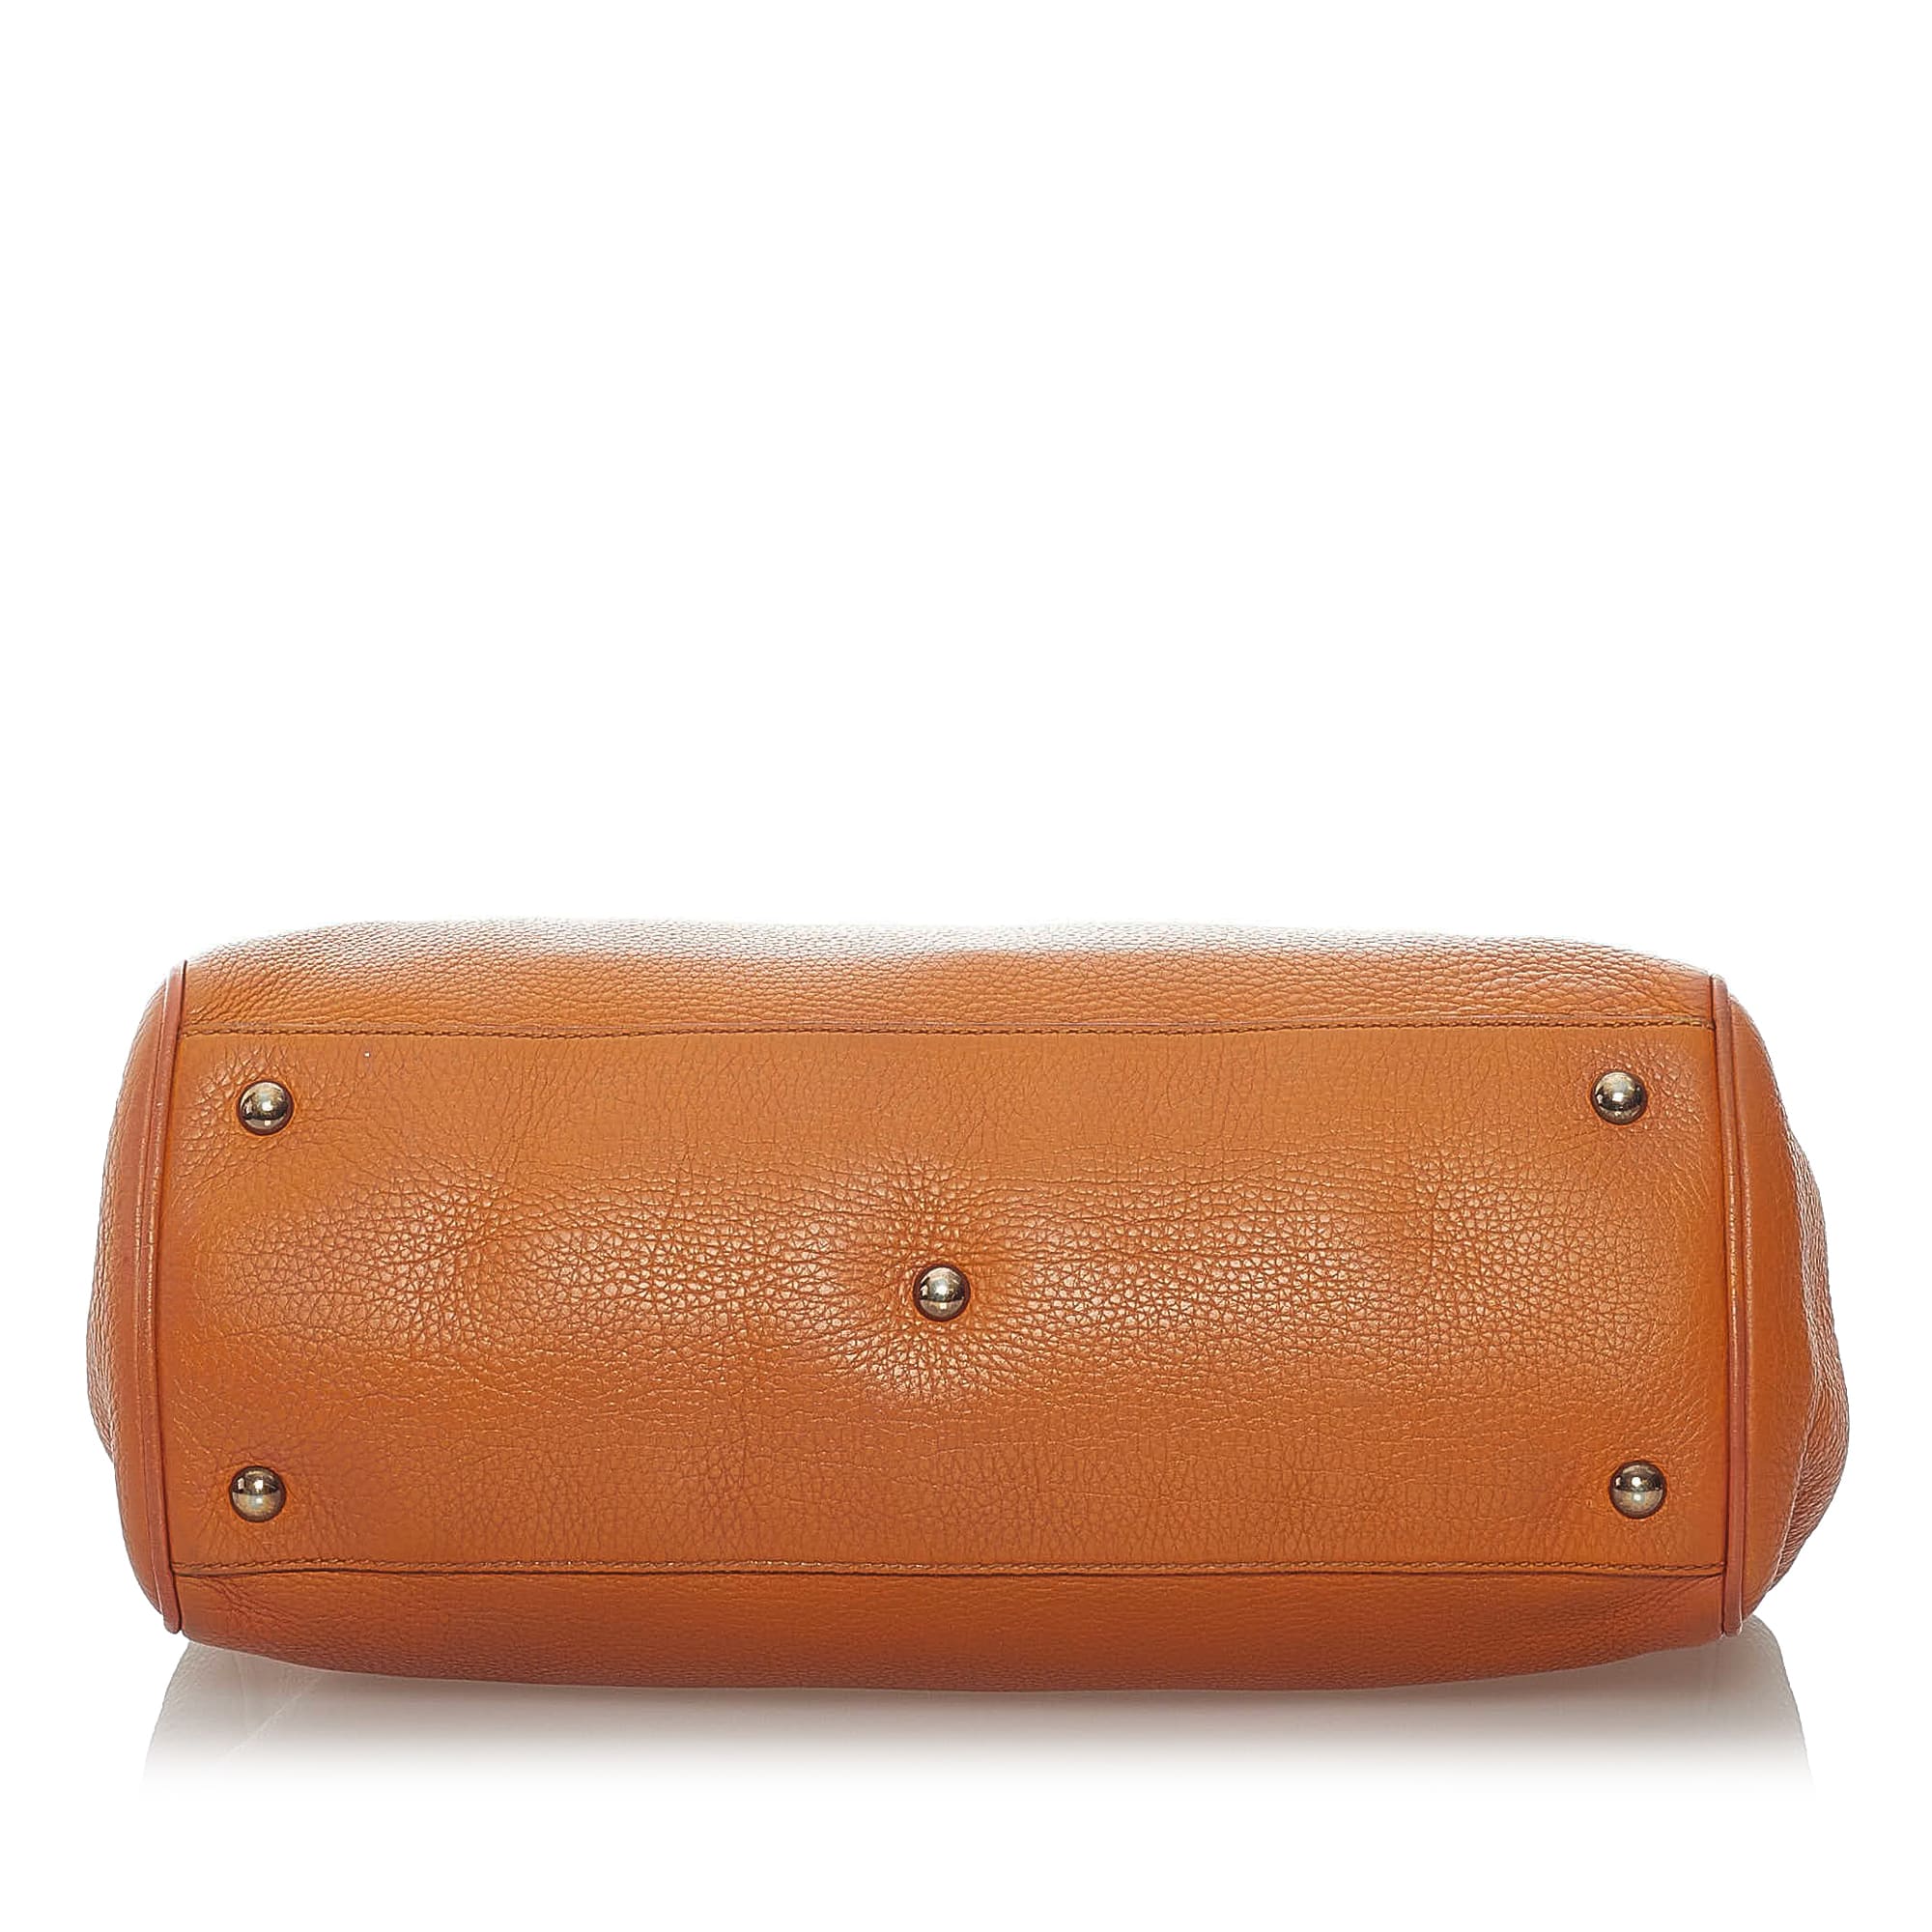 Gucci Bamboo Shopper Leather Satchel, ONESIZE, orange